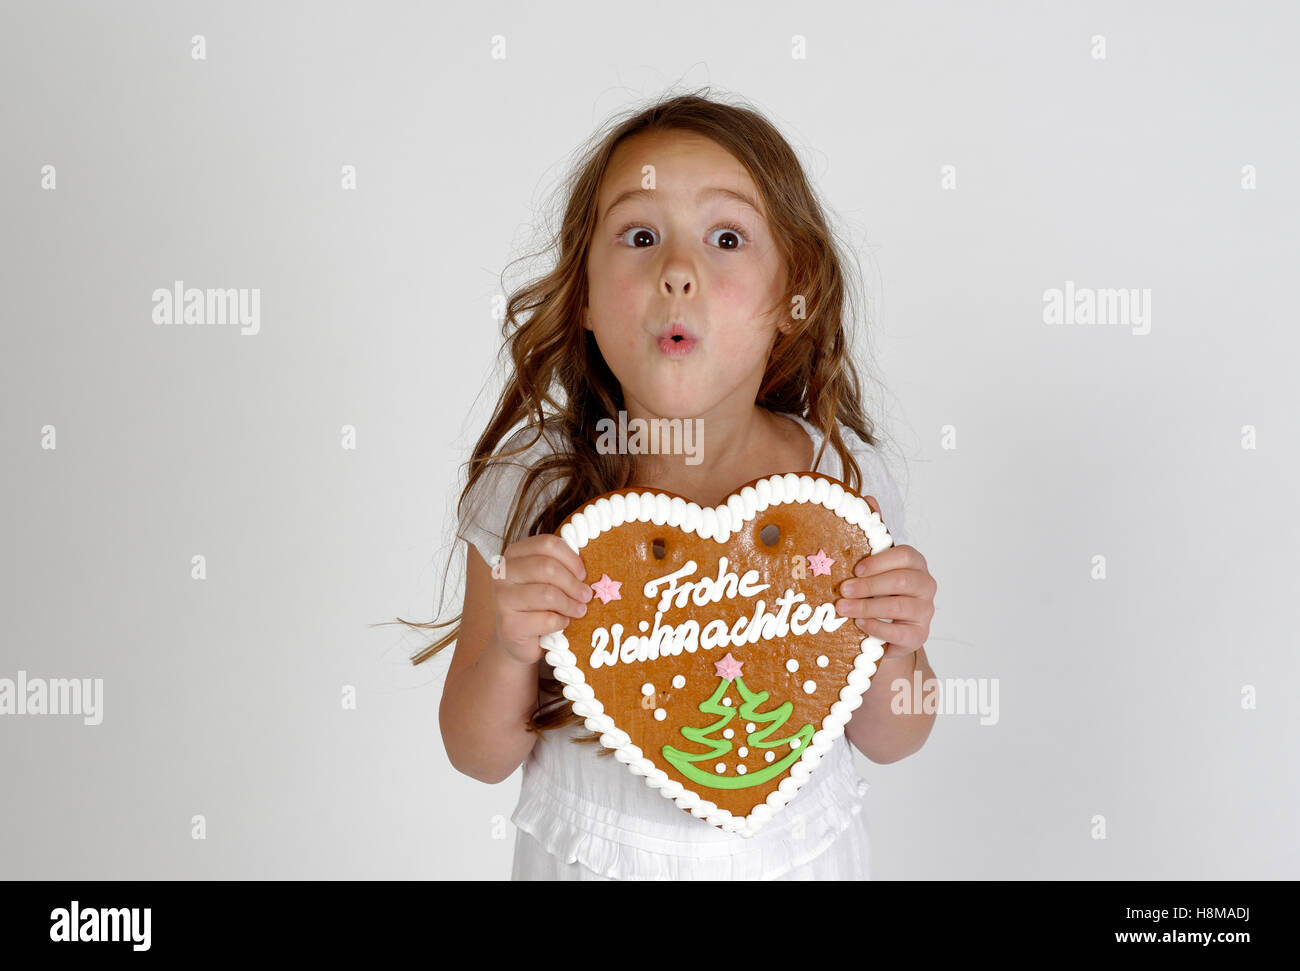 Erstaunt kleines Kind, Mädchen mit Lebkuchen Herz, Frohe Weihnachten, Weihnachtszeit, Deutschland Stockfoto